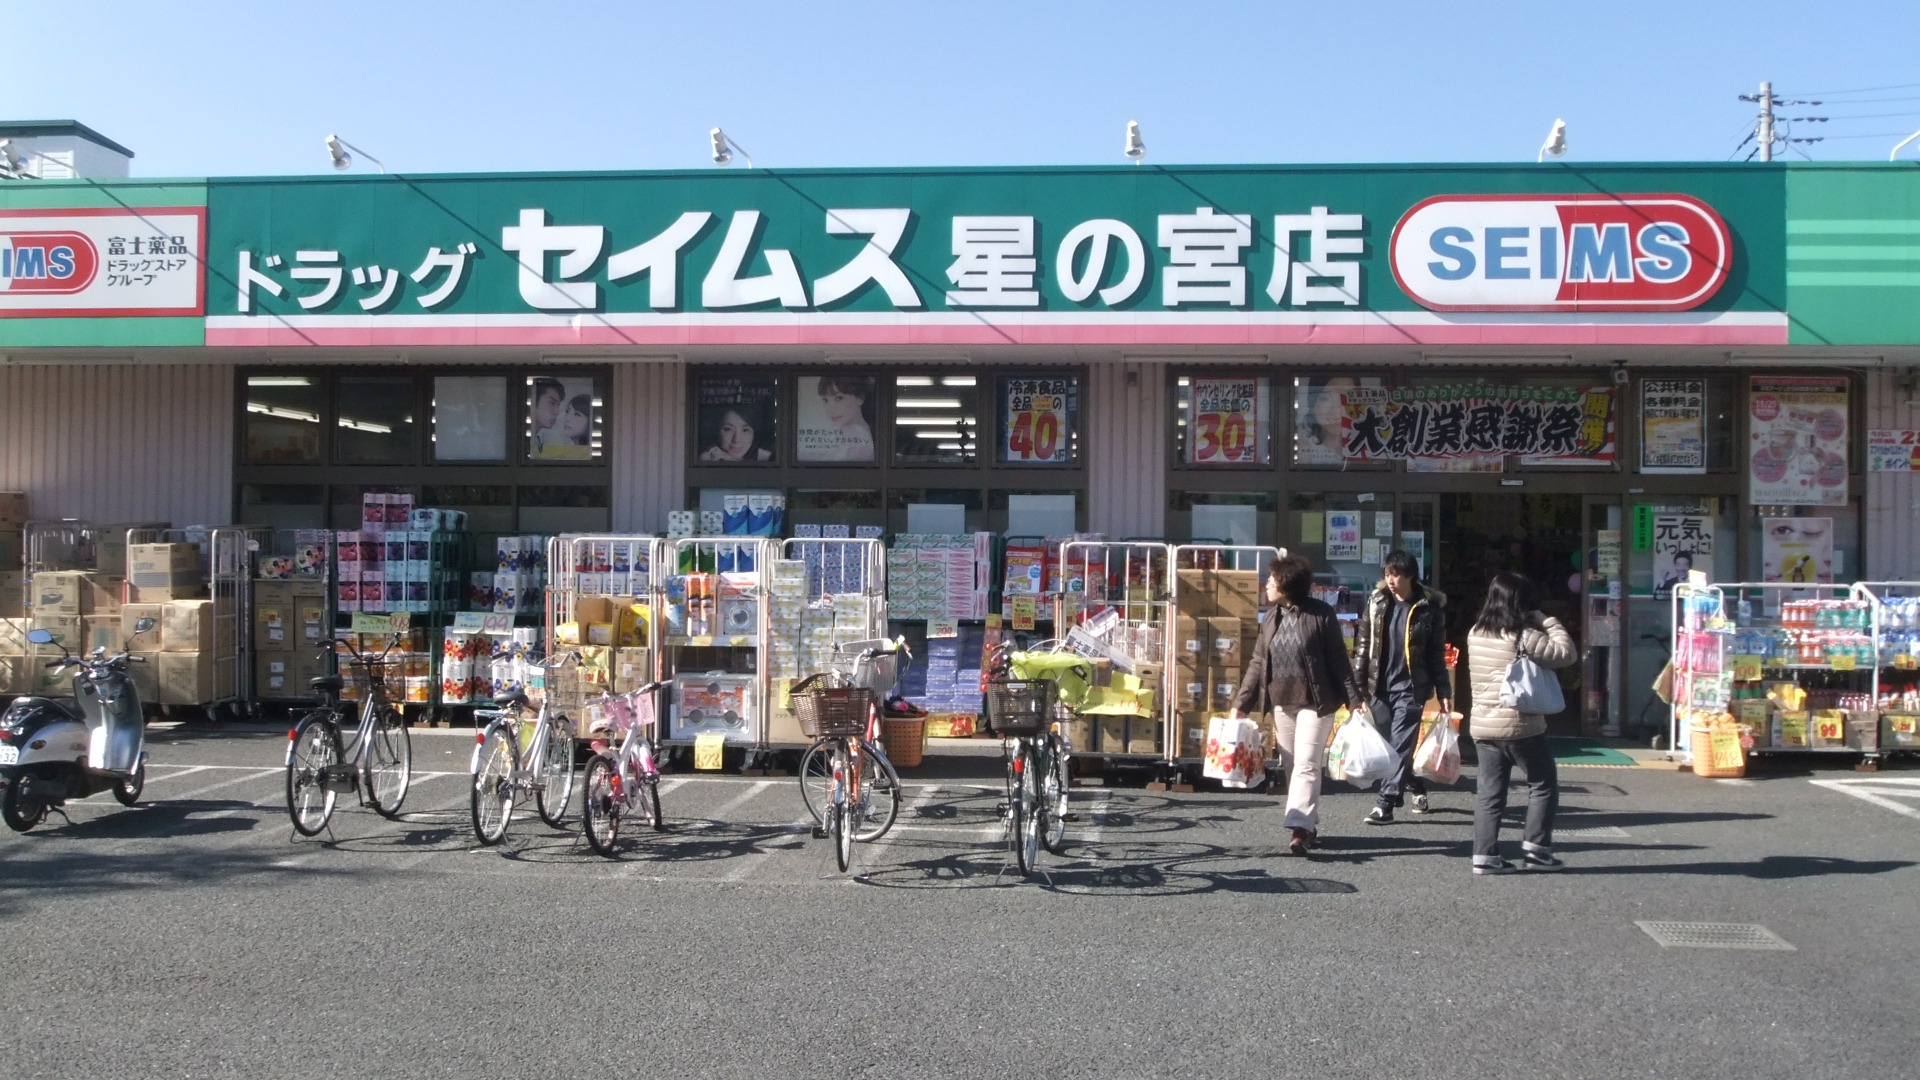 Dorakkusutoa. Drag Seimusu Hoshinomiya shop 1102m until (drugstore)